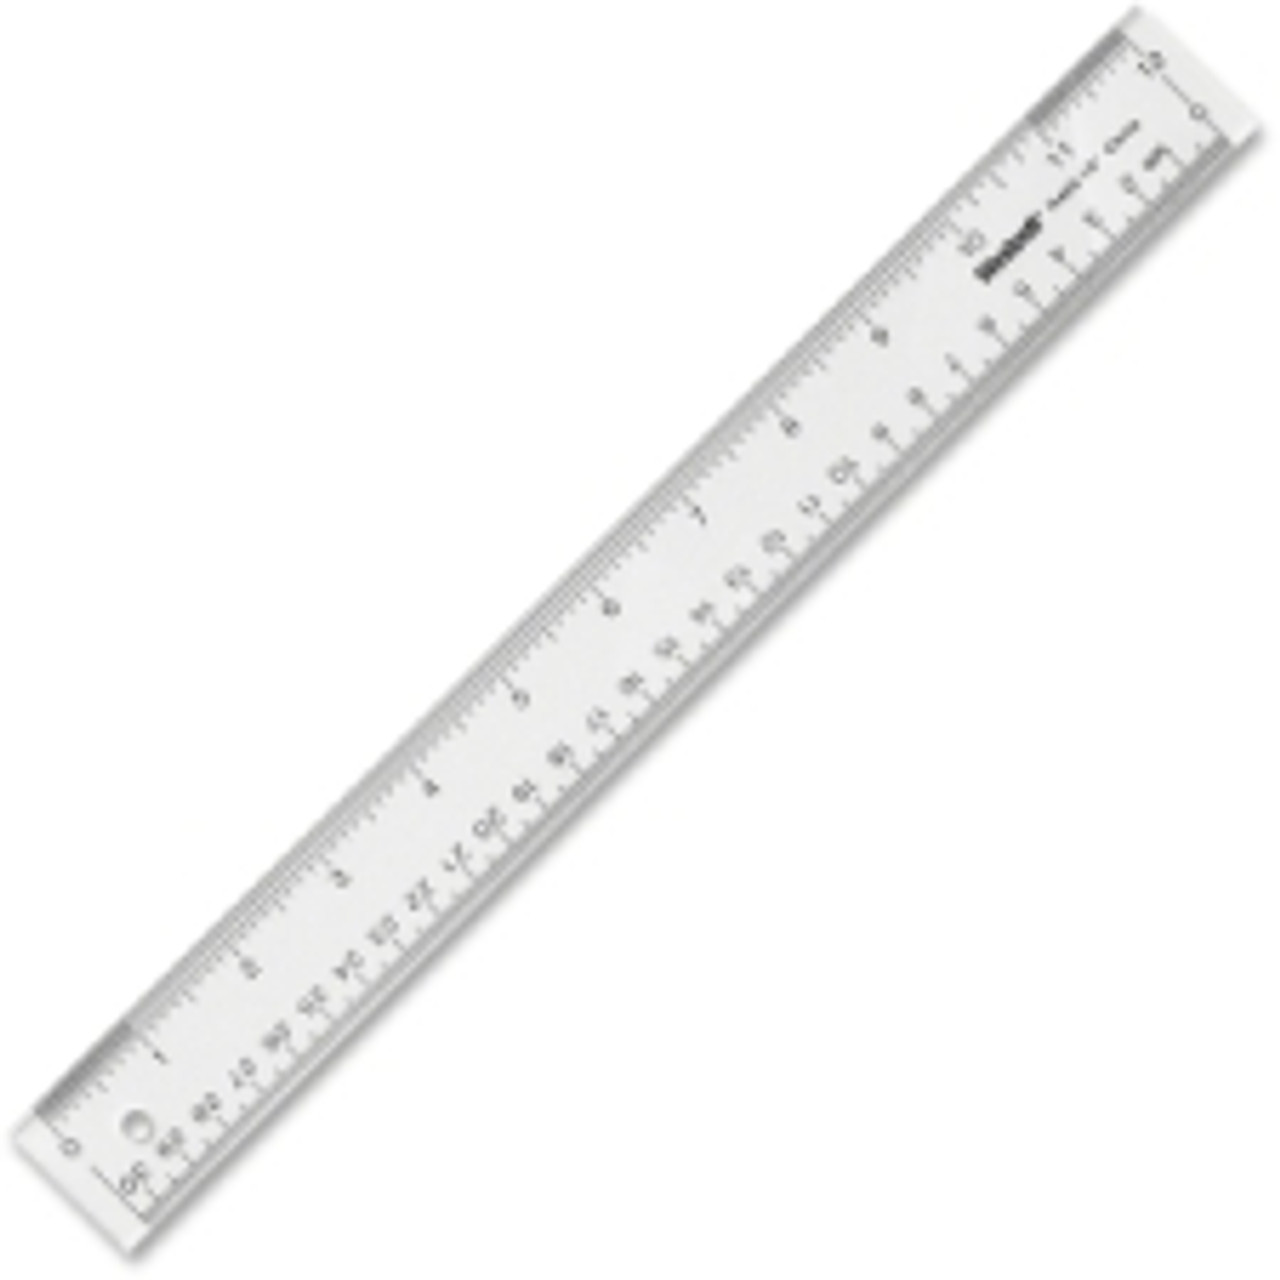 Westcott See Through Acrylic Ruler - ACM10562 